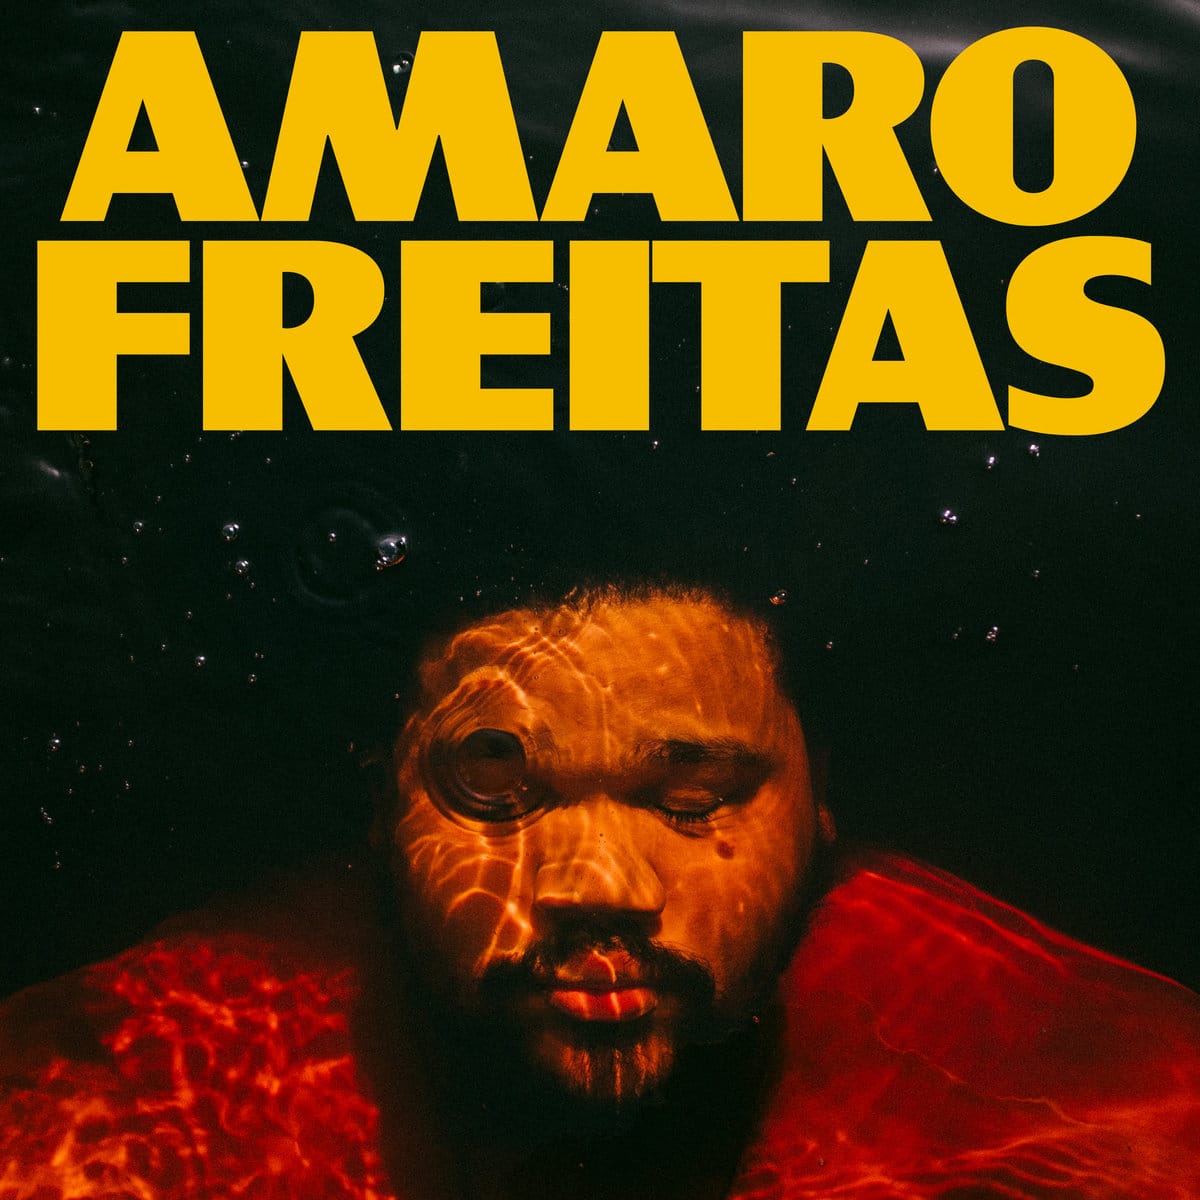 revistaprosaversoearte.com - O pianista pernambucano Amaro Freitas lança seu novo álbum "Y'Y"